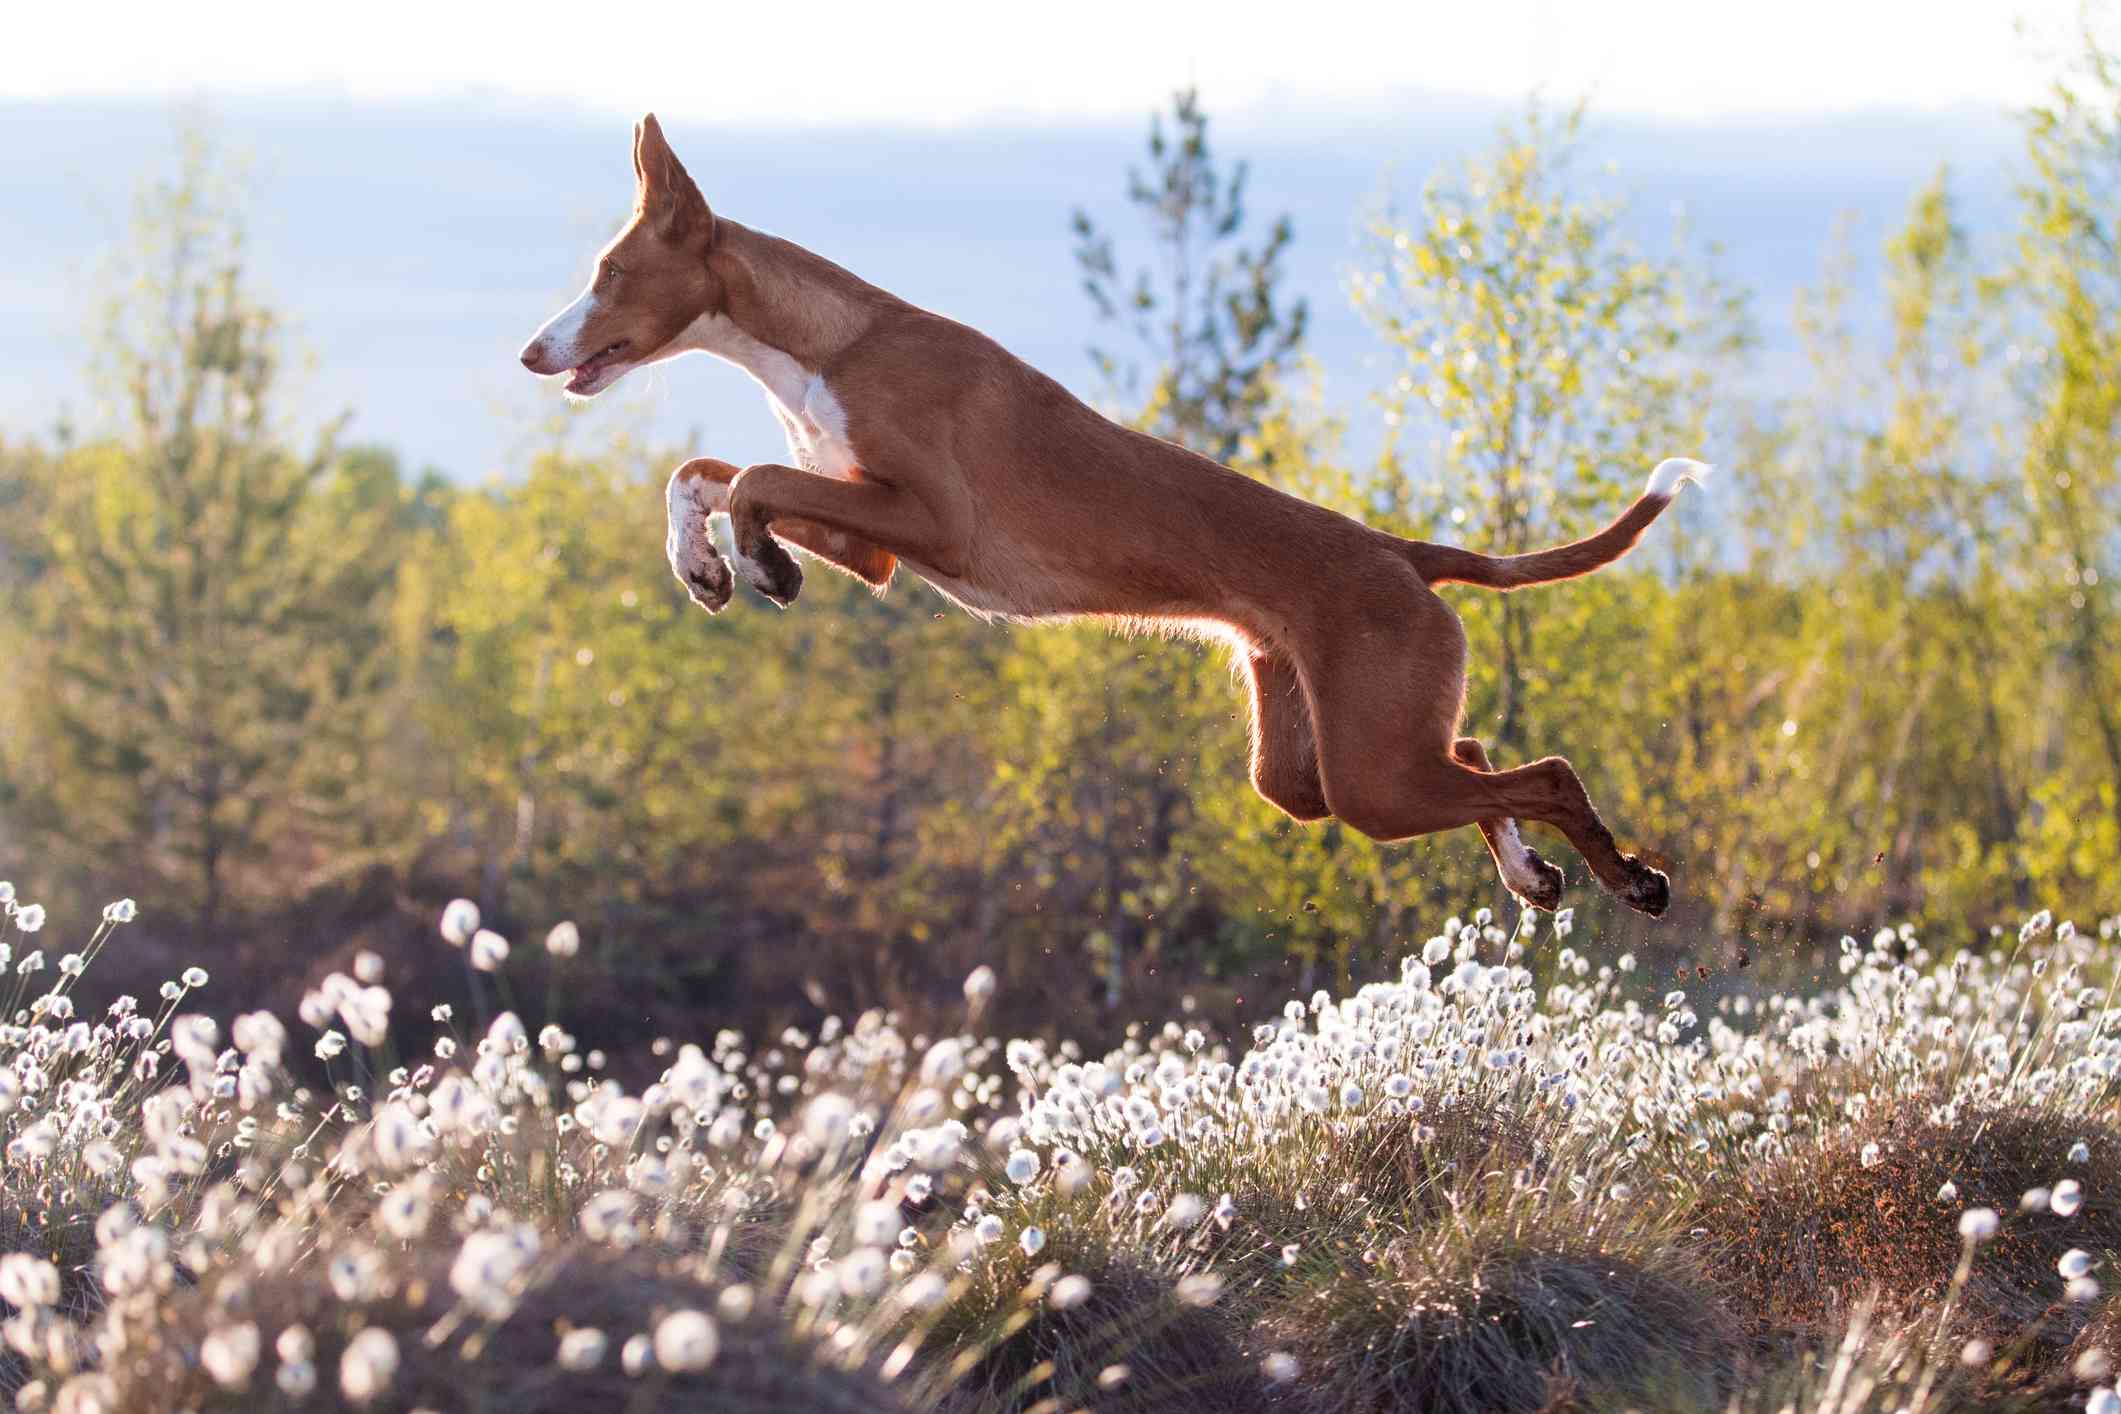 Ibizan Hound jumping through a meadow